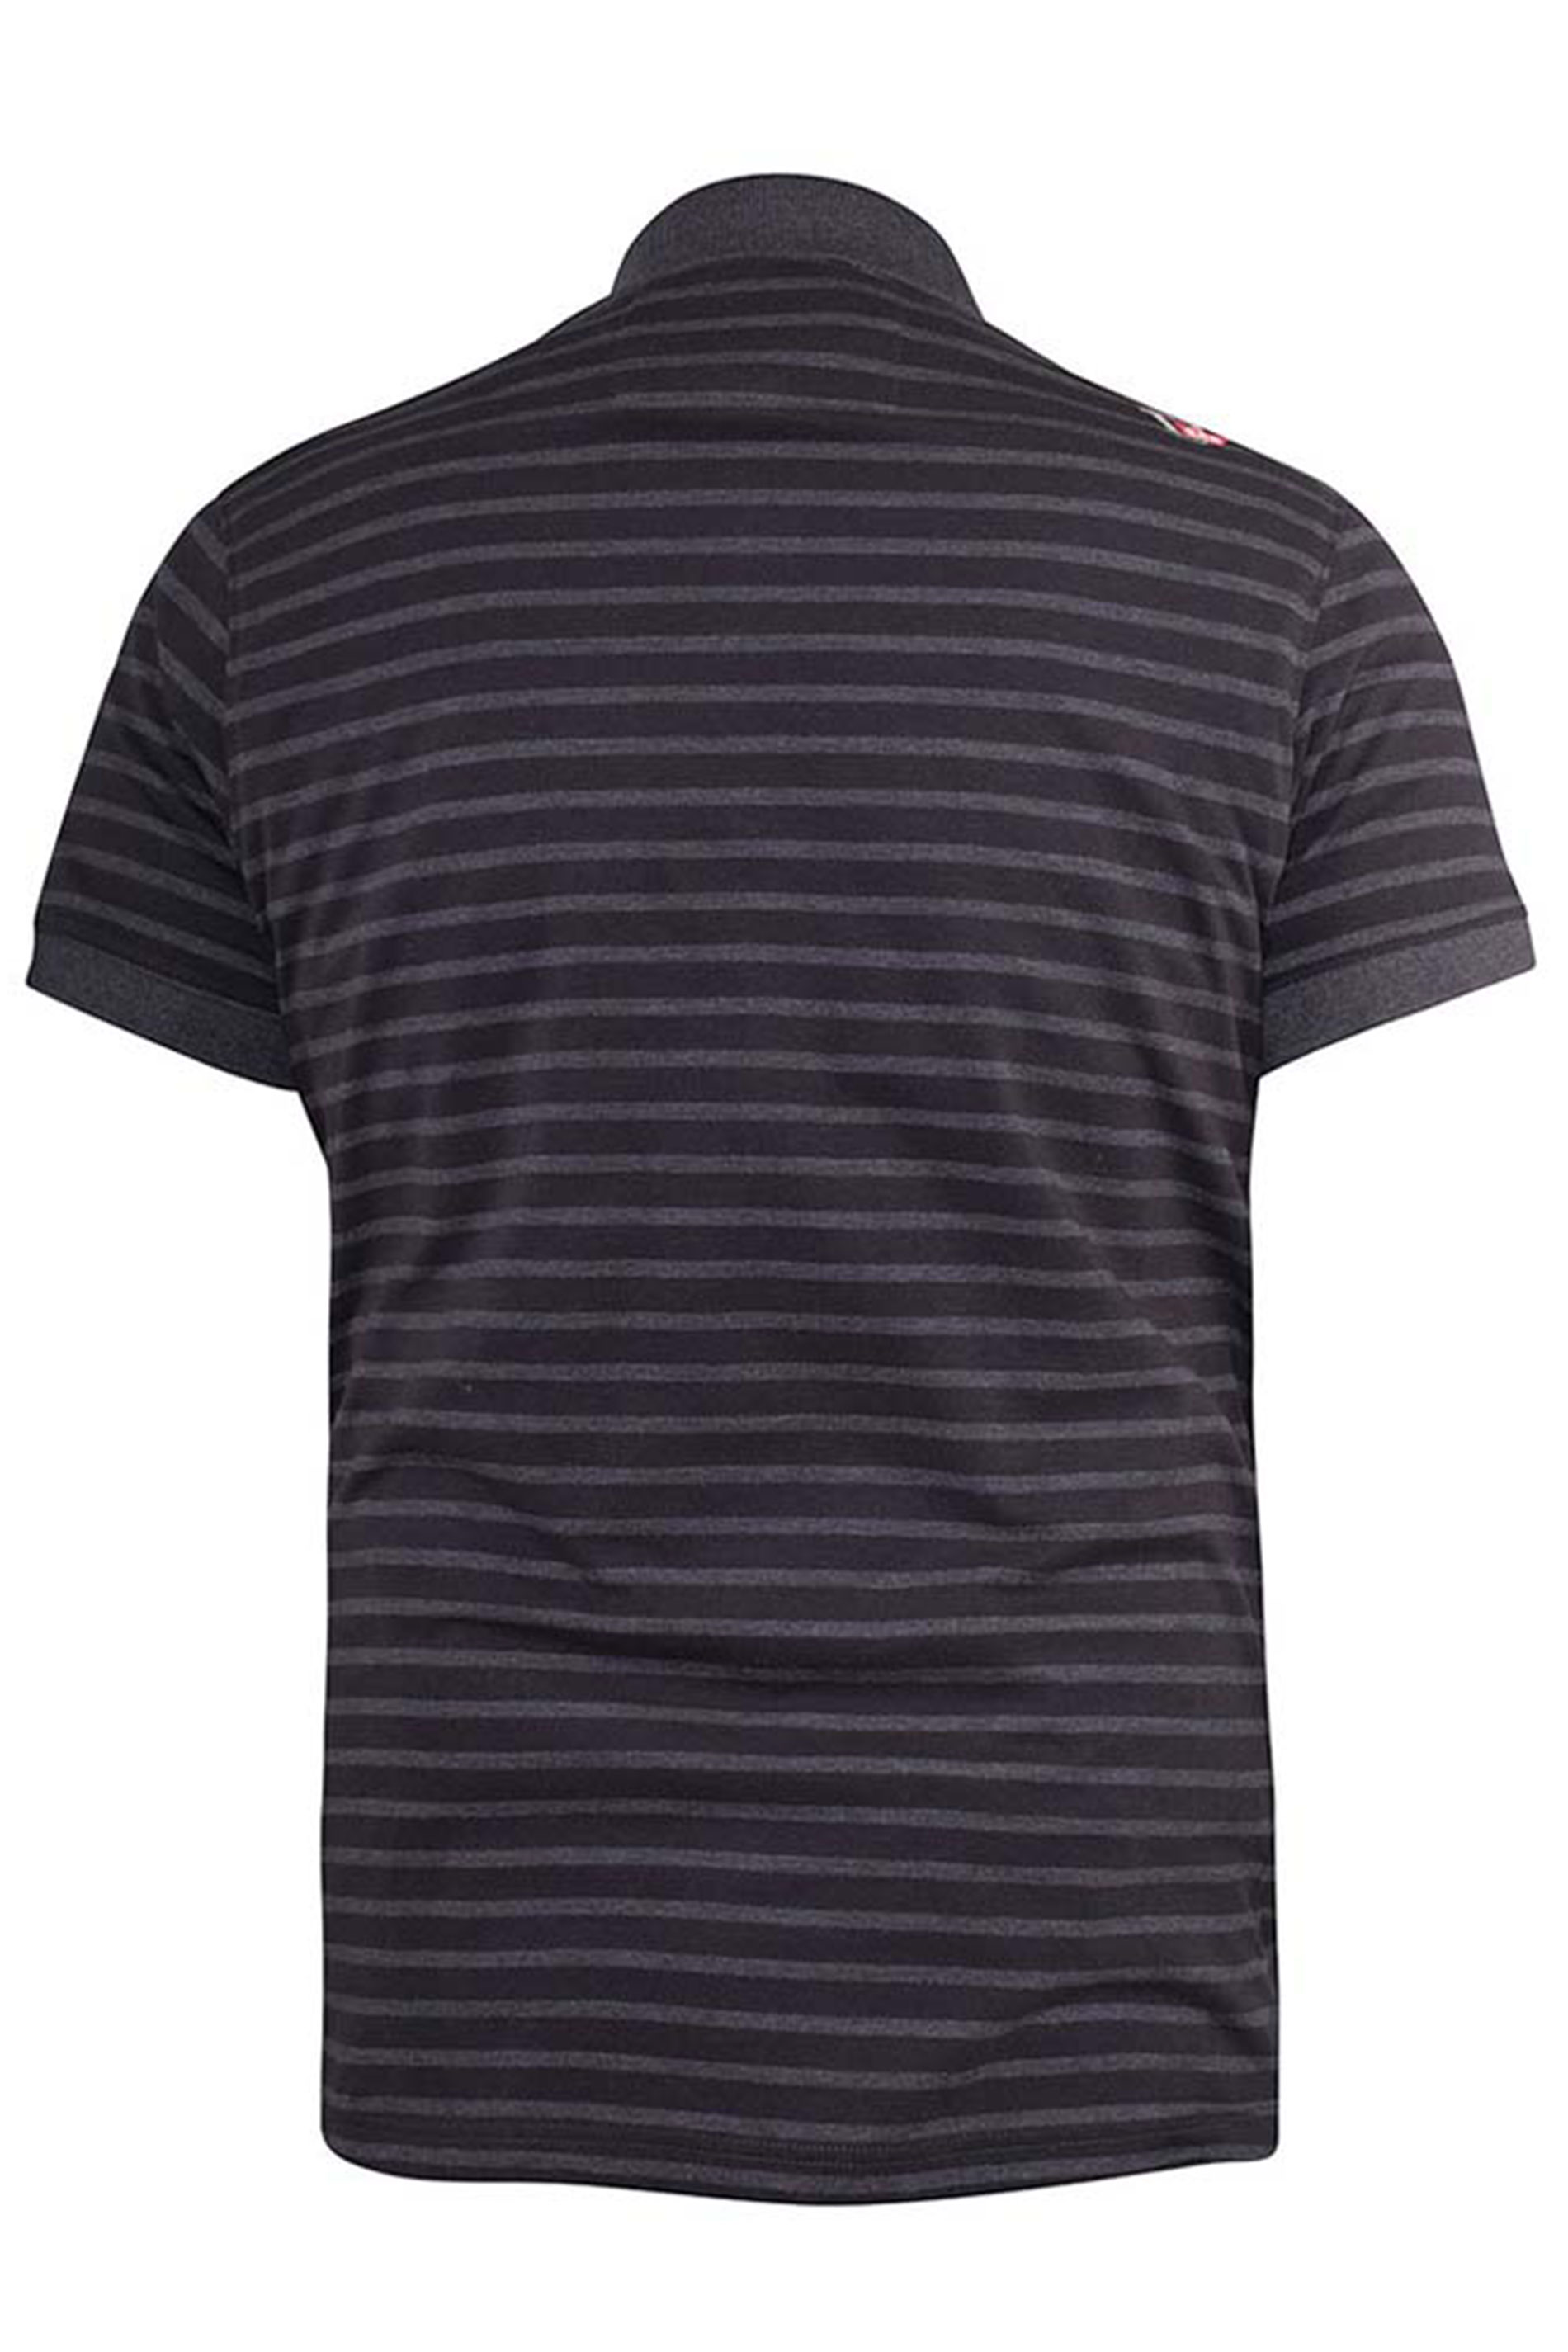 D555 Black Stripe Polo Shirt Big & Tall | BadRhino